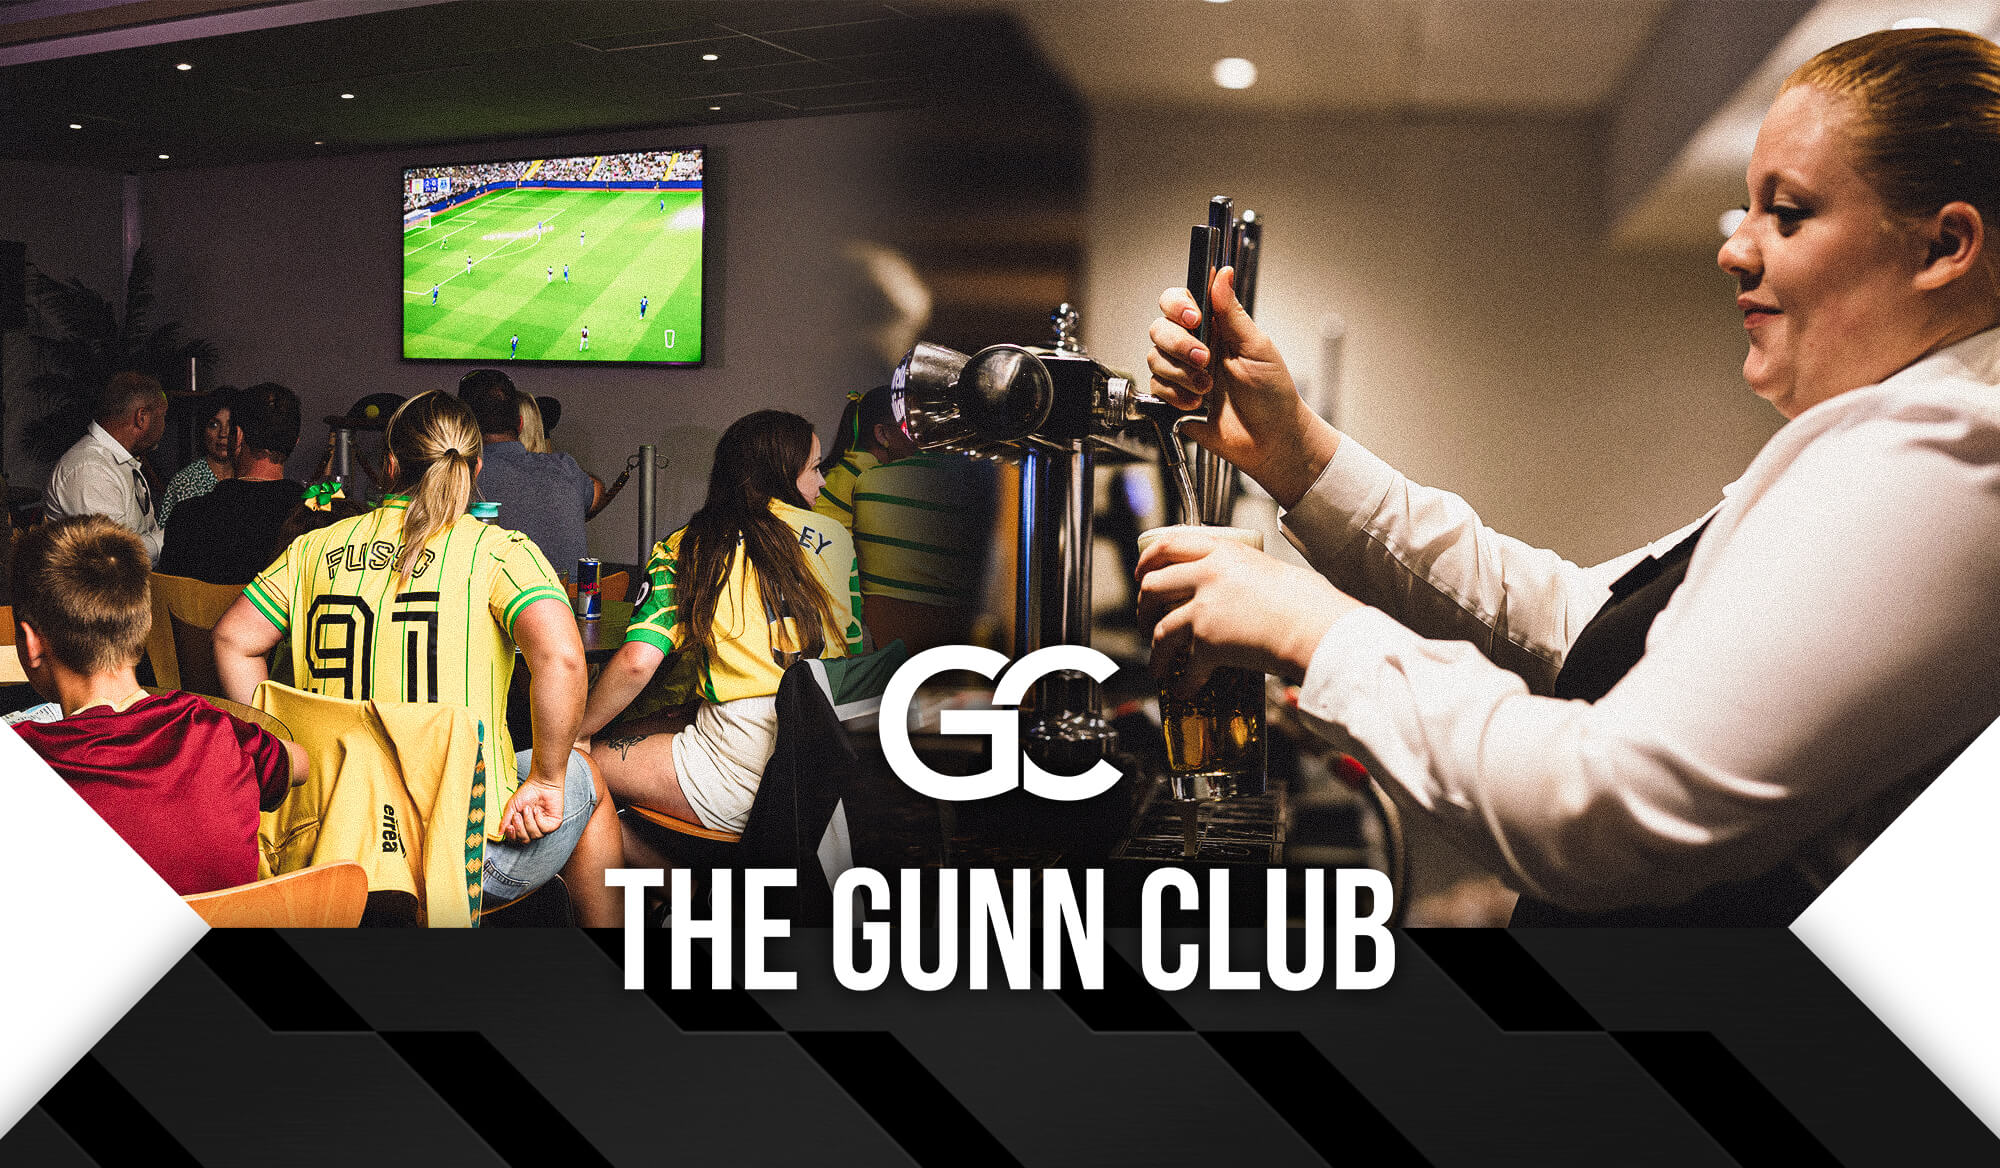 The Gunn Club